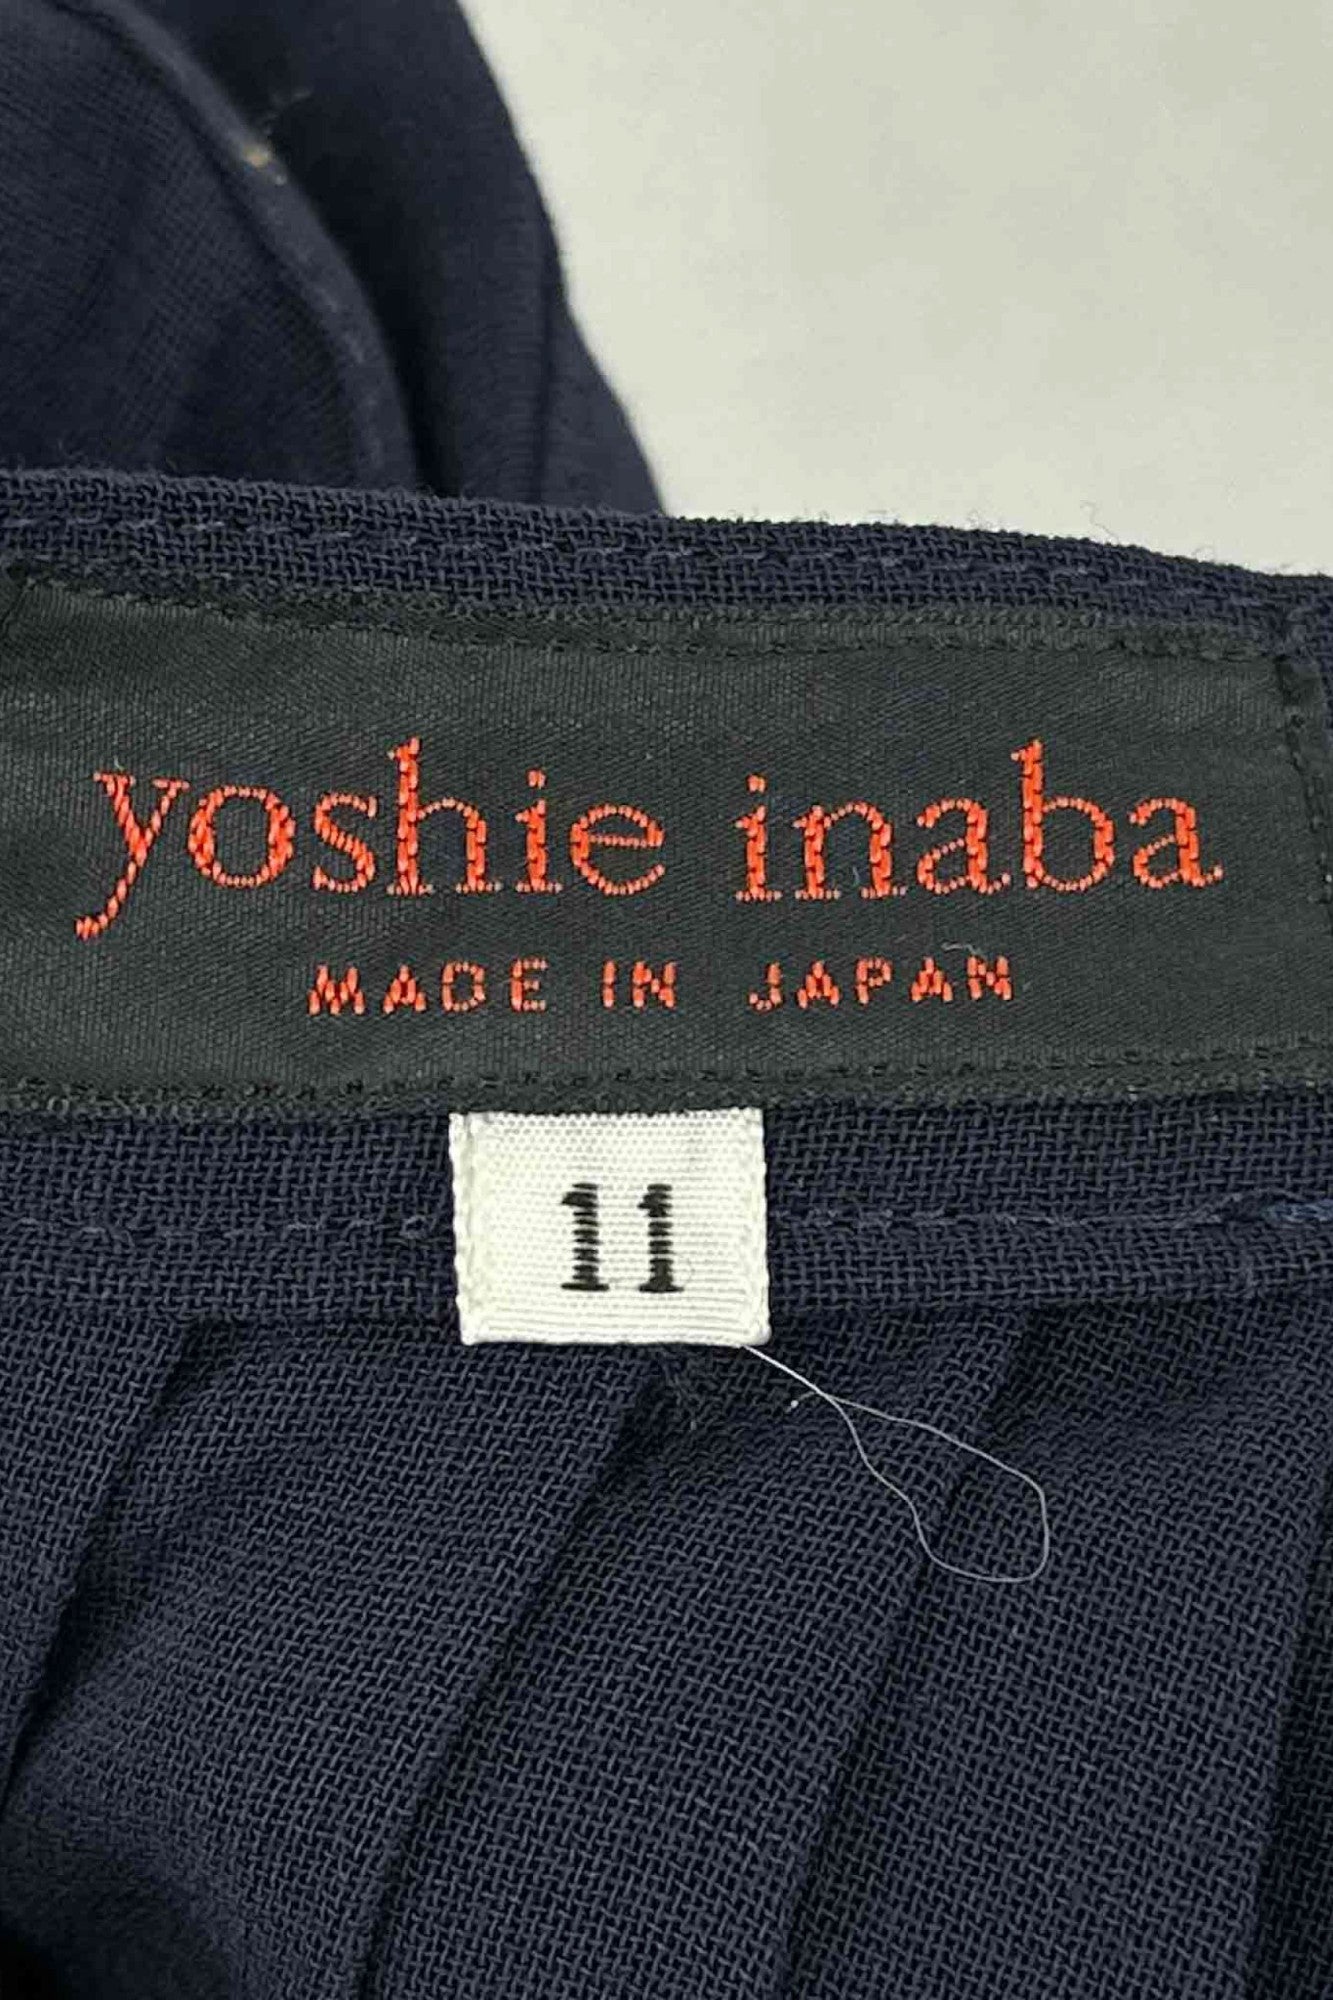 yoshie inaba navy pleated skirt